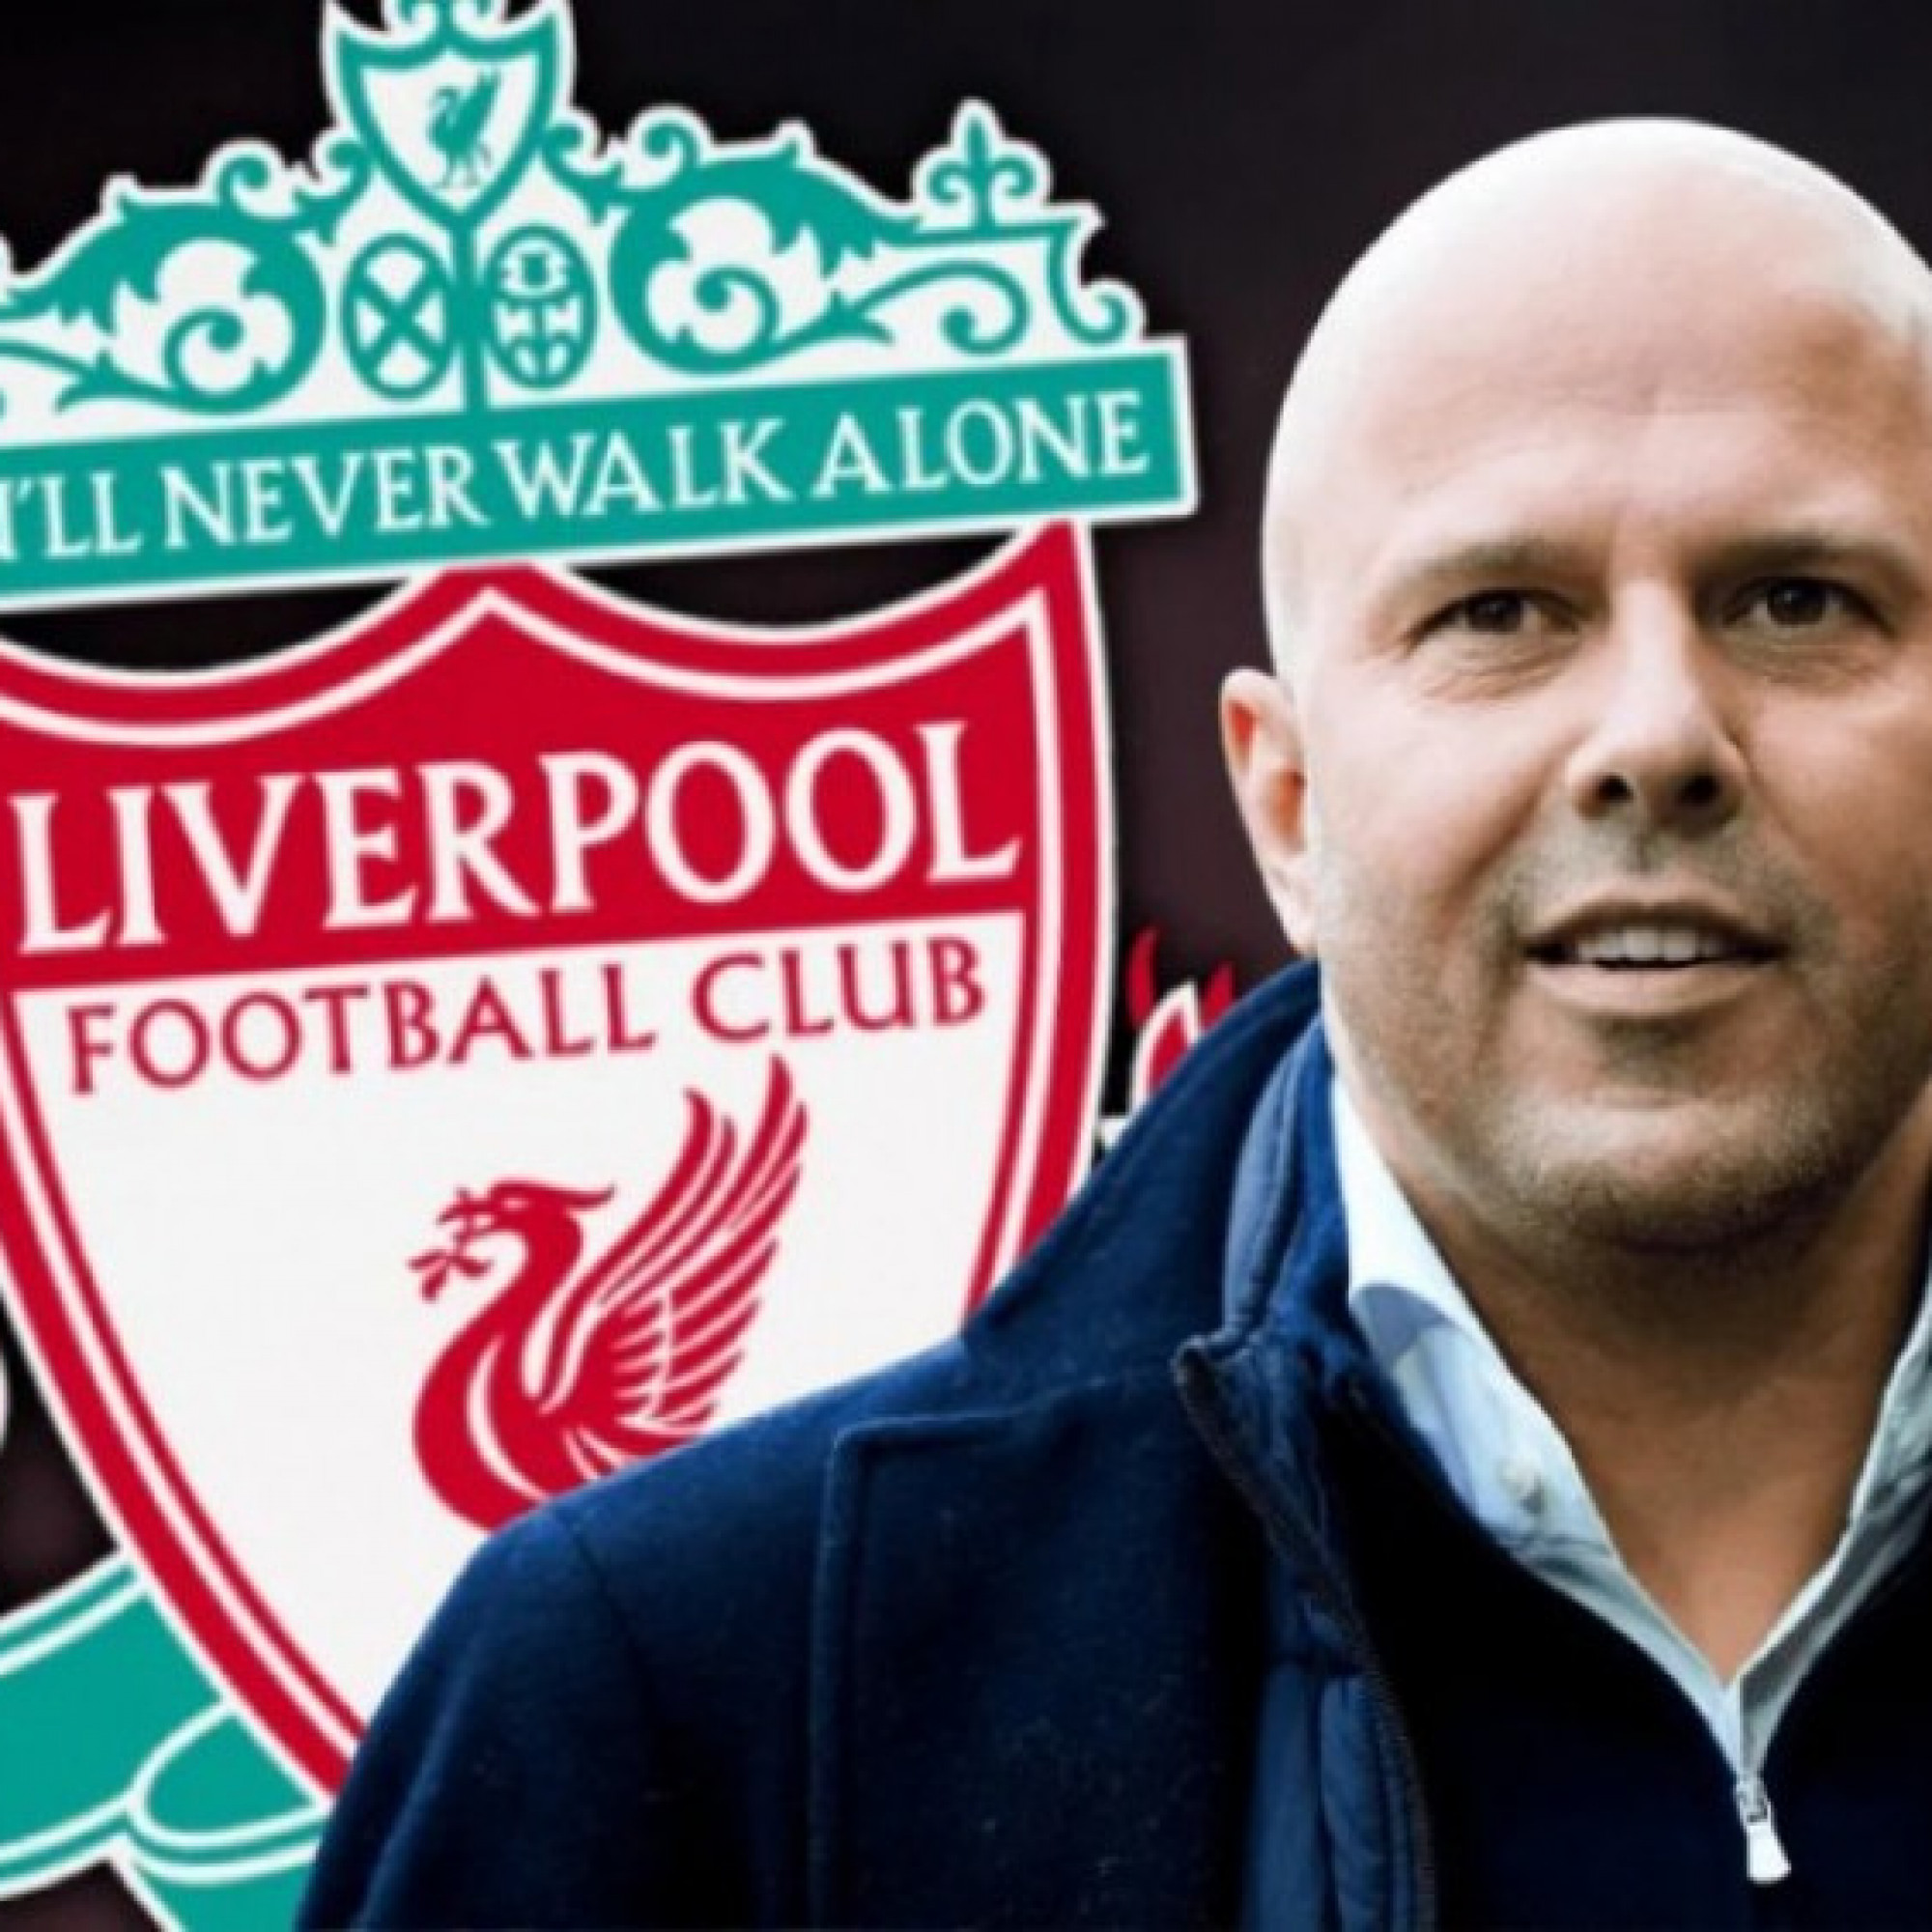  - Nóng Liverpool ấn định người thay thế Klopp: Bất ngờ HLV mang tên Arne Slot